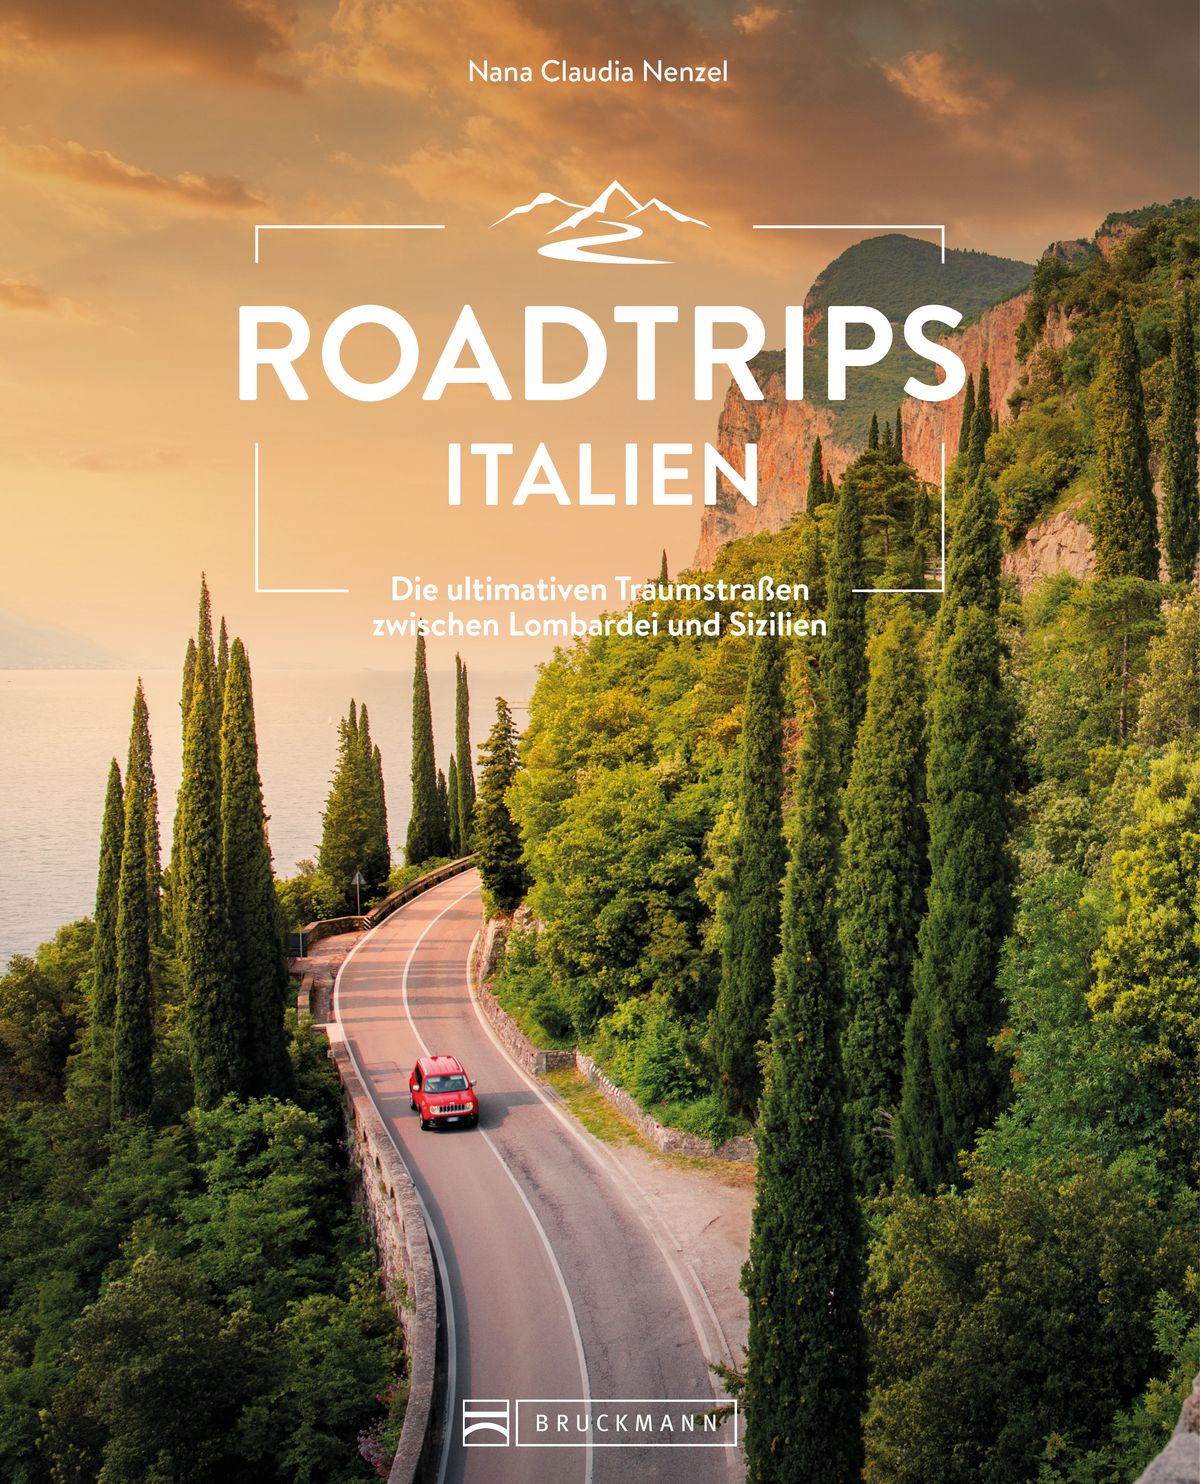 Foto: Roadtrips Italien